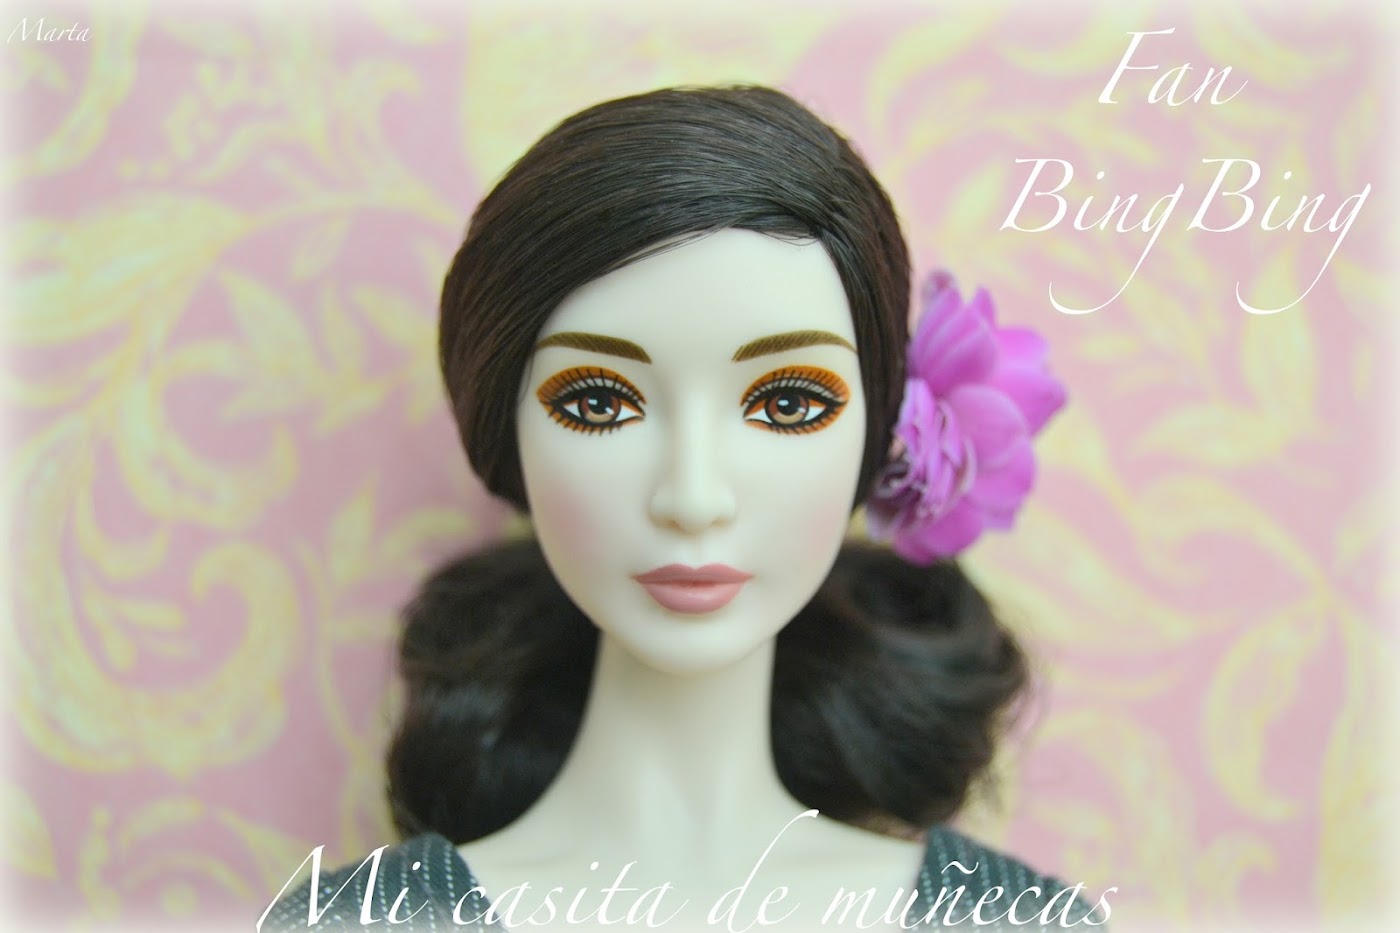 Barbie Fan Bingbing mattel. Blog Mi Casita de Muñecas. Vestido hecho a mano para Barbie.